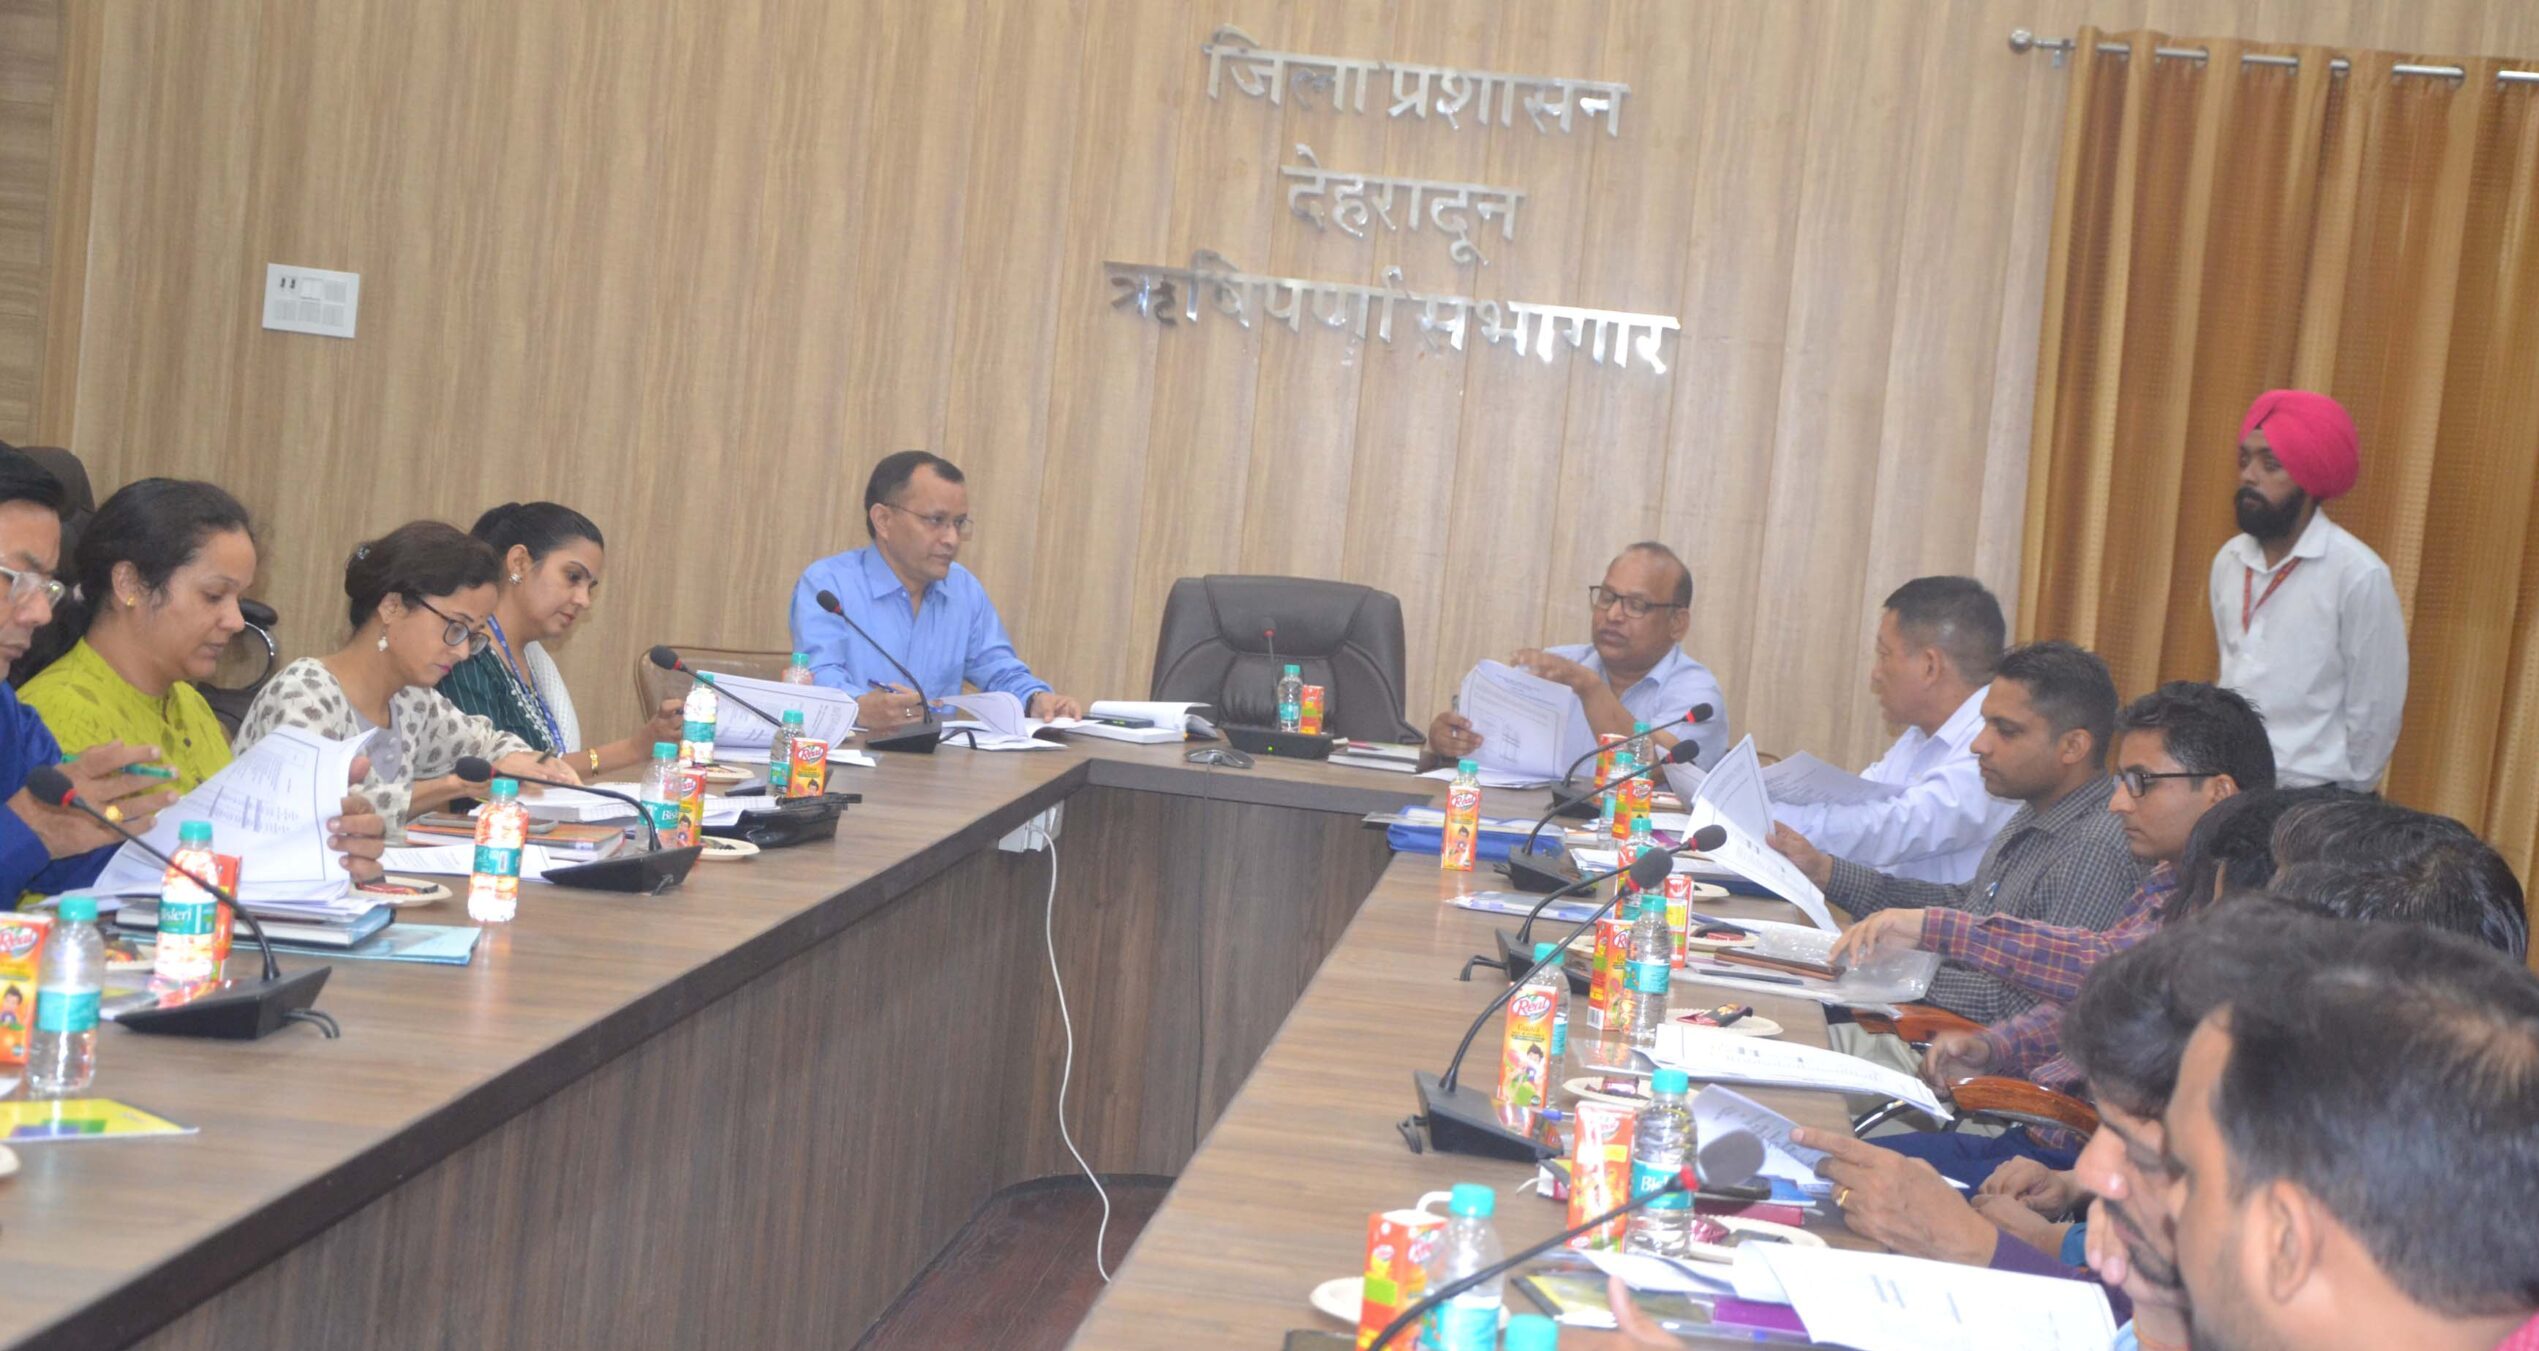 उत्तराखंड, डीएम डॉ. आर राजेश कुमार, निदेशक ग्राम्य विकास अभिकरण, Uttarakhand, DM Dr. R. Rajesh Kumar, Director Rural Development Agency